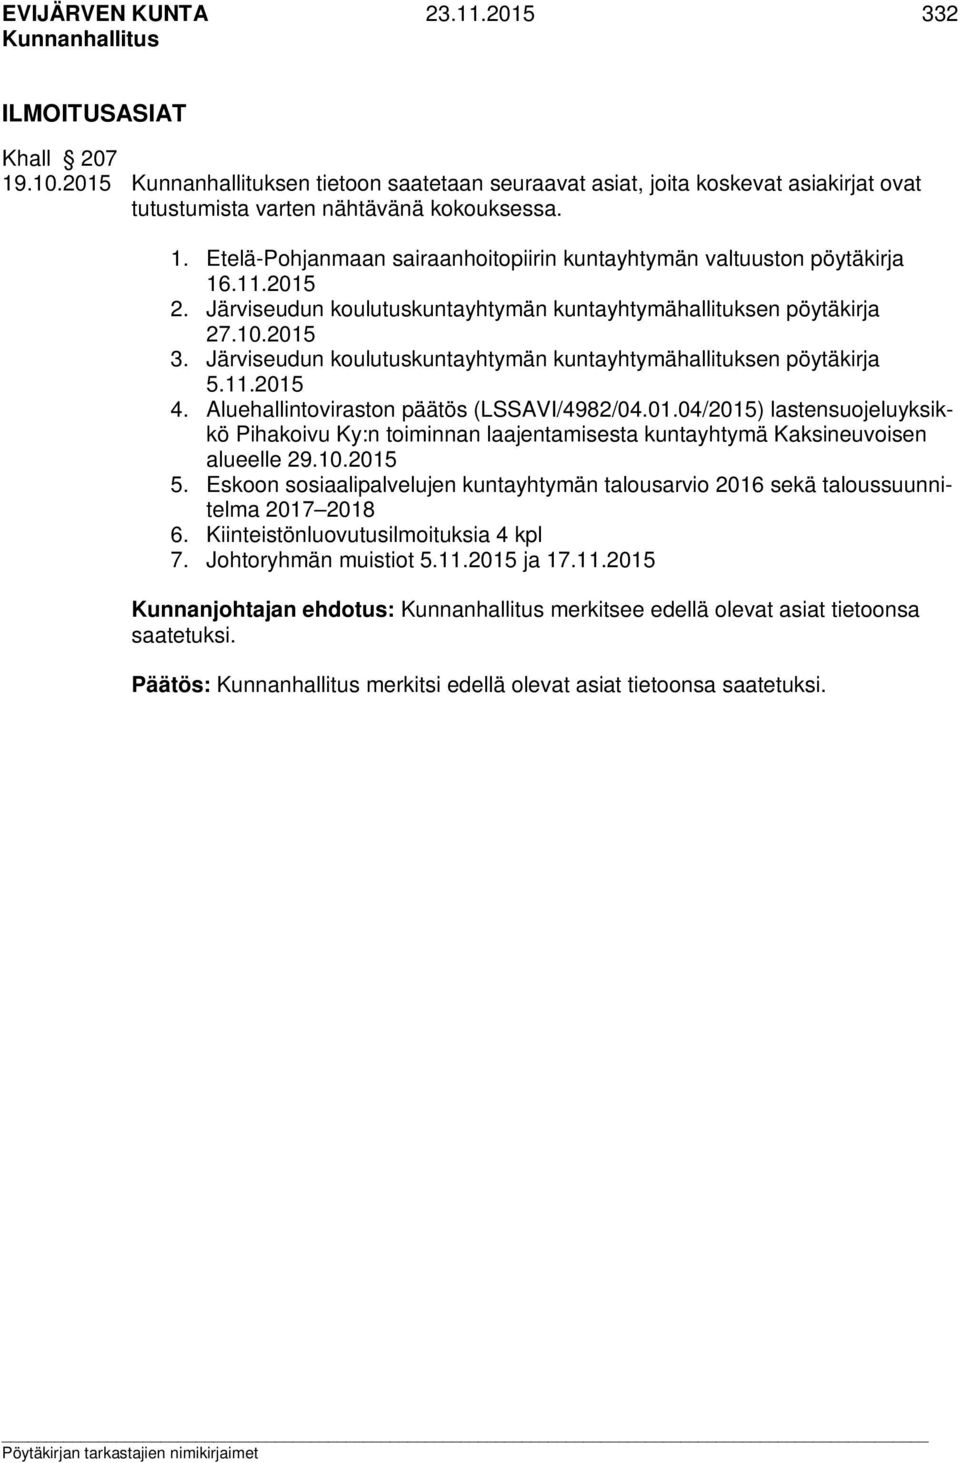 Aluehallintoviraston päätös (LSSAVI/4982/04.01.04/2015) lastensuojeluyksikkö Pihakoivu Ky:n toiminnan laajentamisesta kuntayhtymä Kaksineuvoisen alueelle 29.10.2015 5.